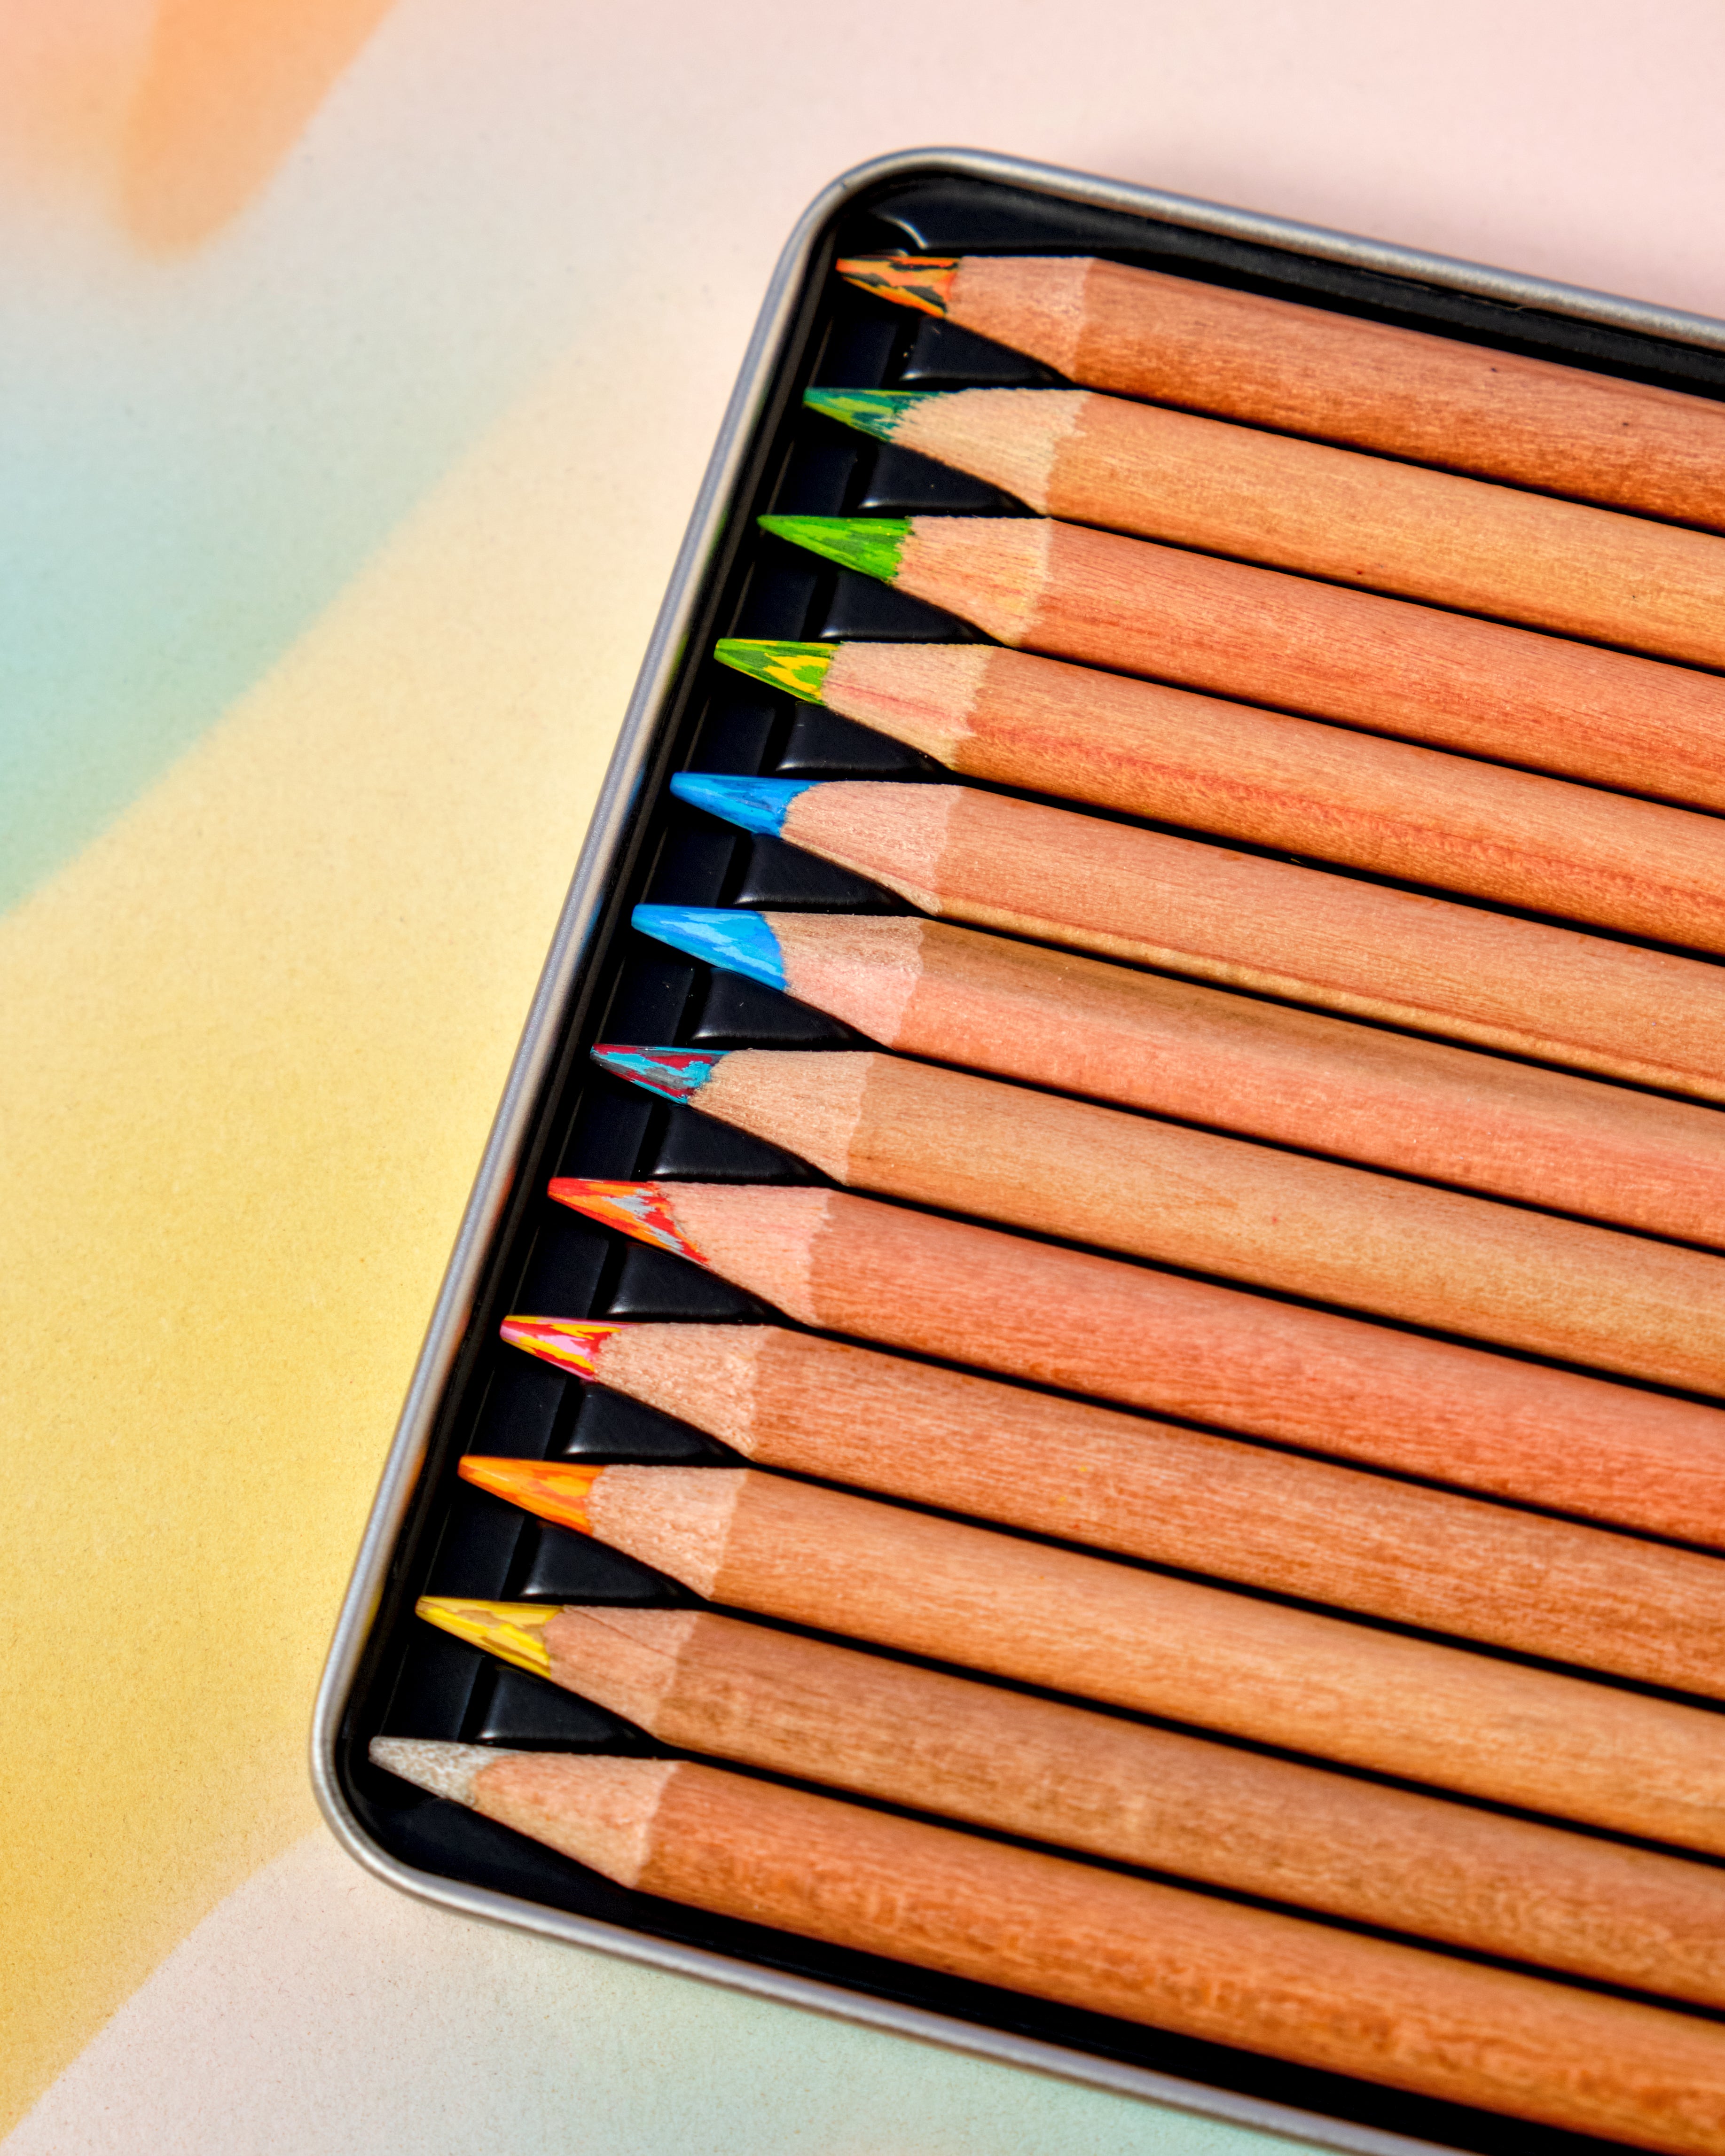 Koh-I-Noor Tri-Tone Color Pencils 12 Set